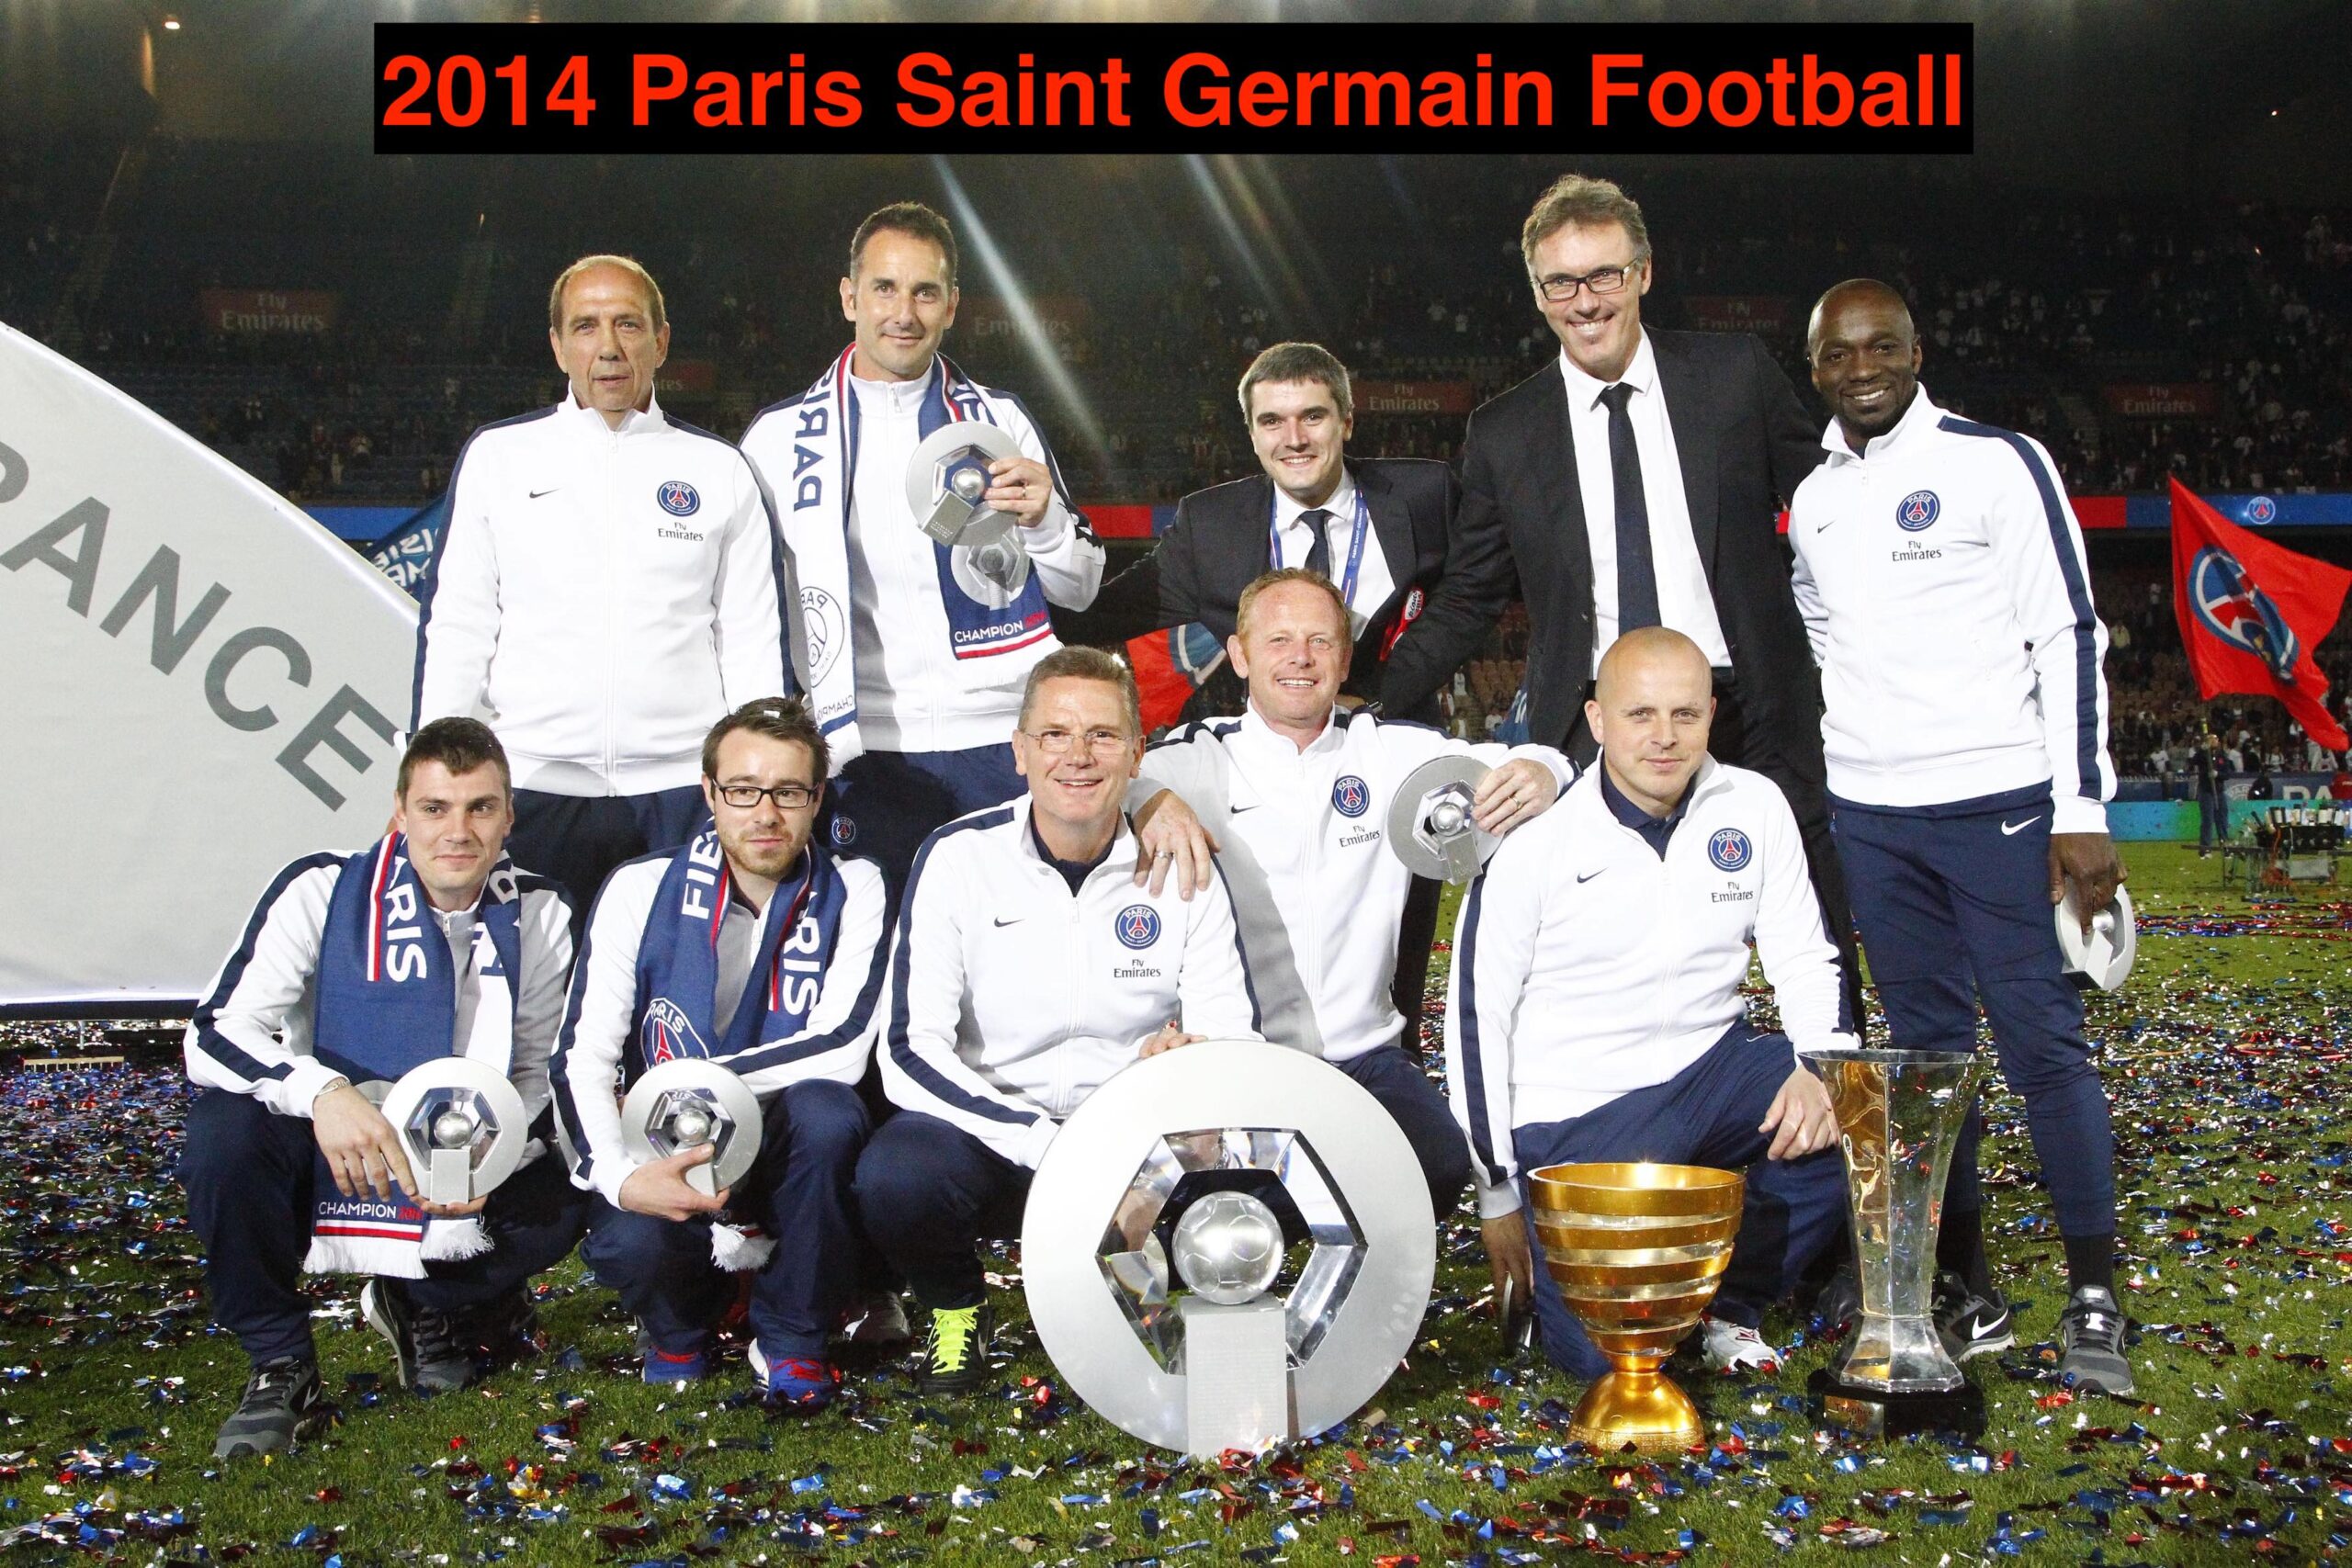 2014 Paris Saint Germain Football